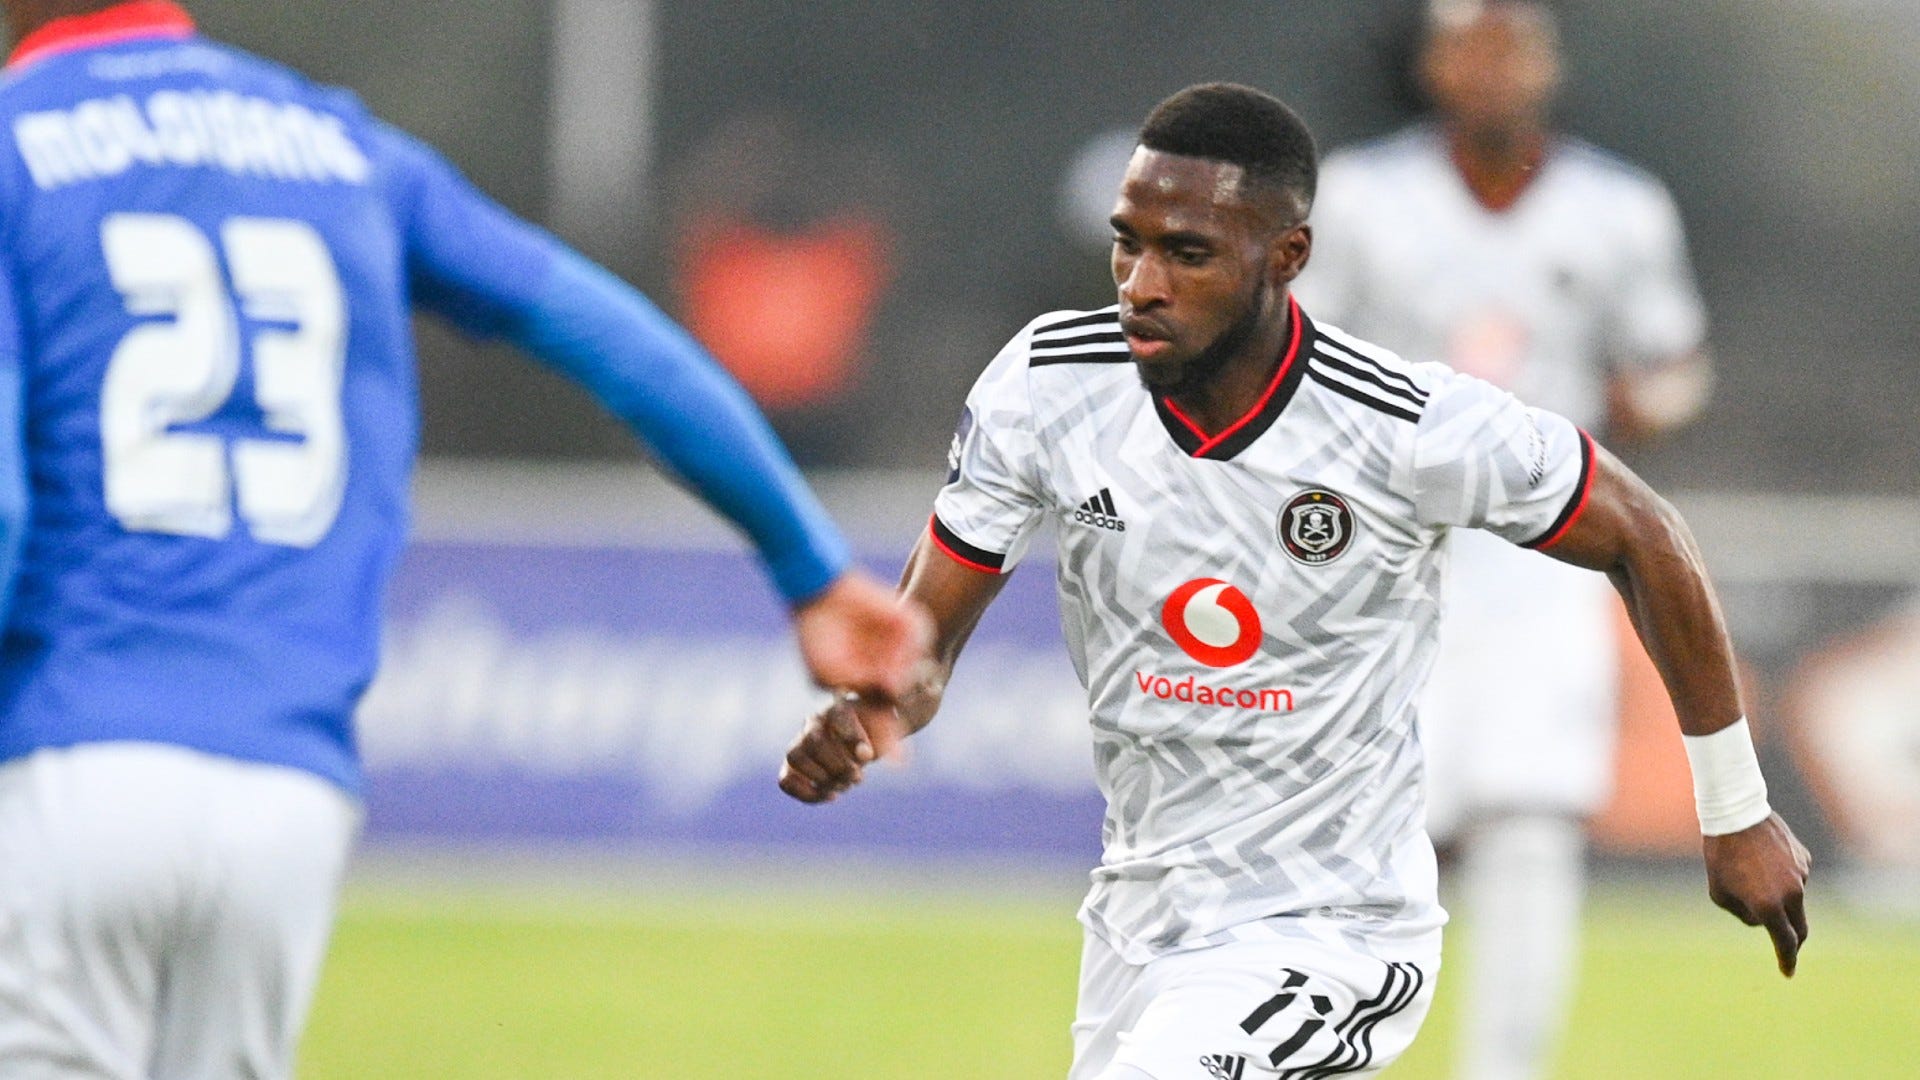 Orlando Pirates welcome back Ofori ahead of Venda cup clash